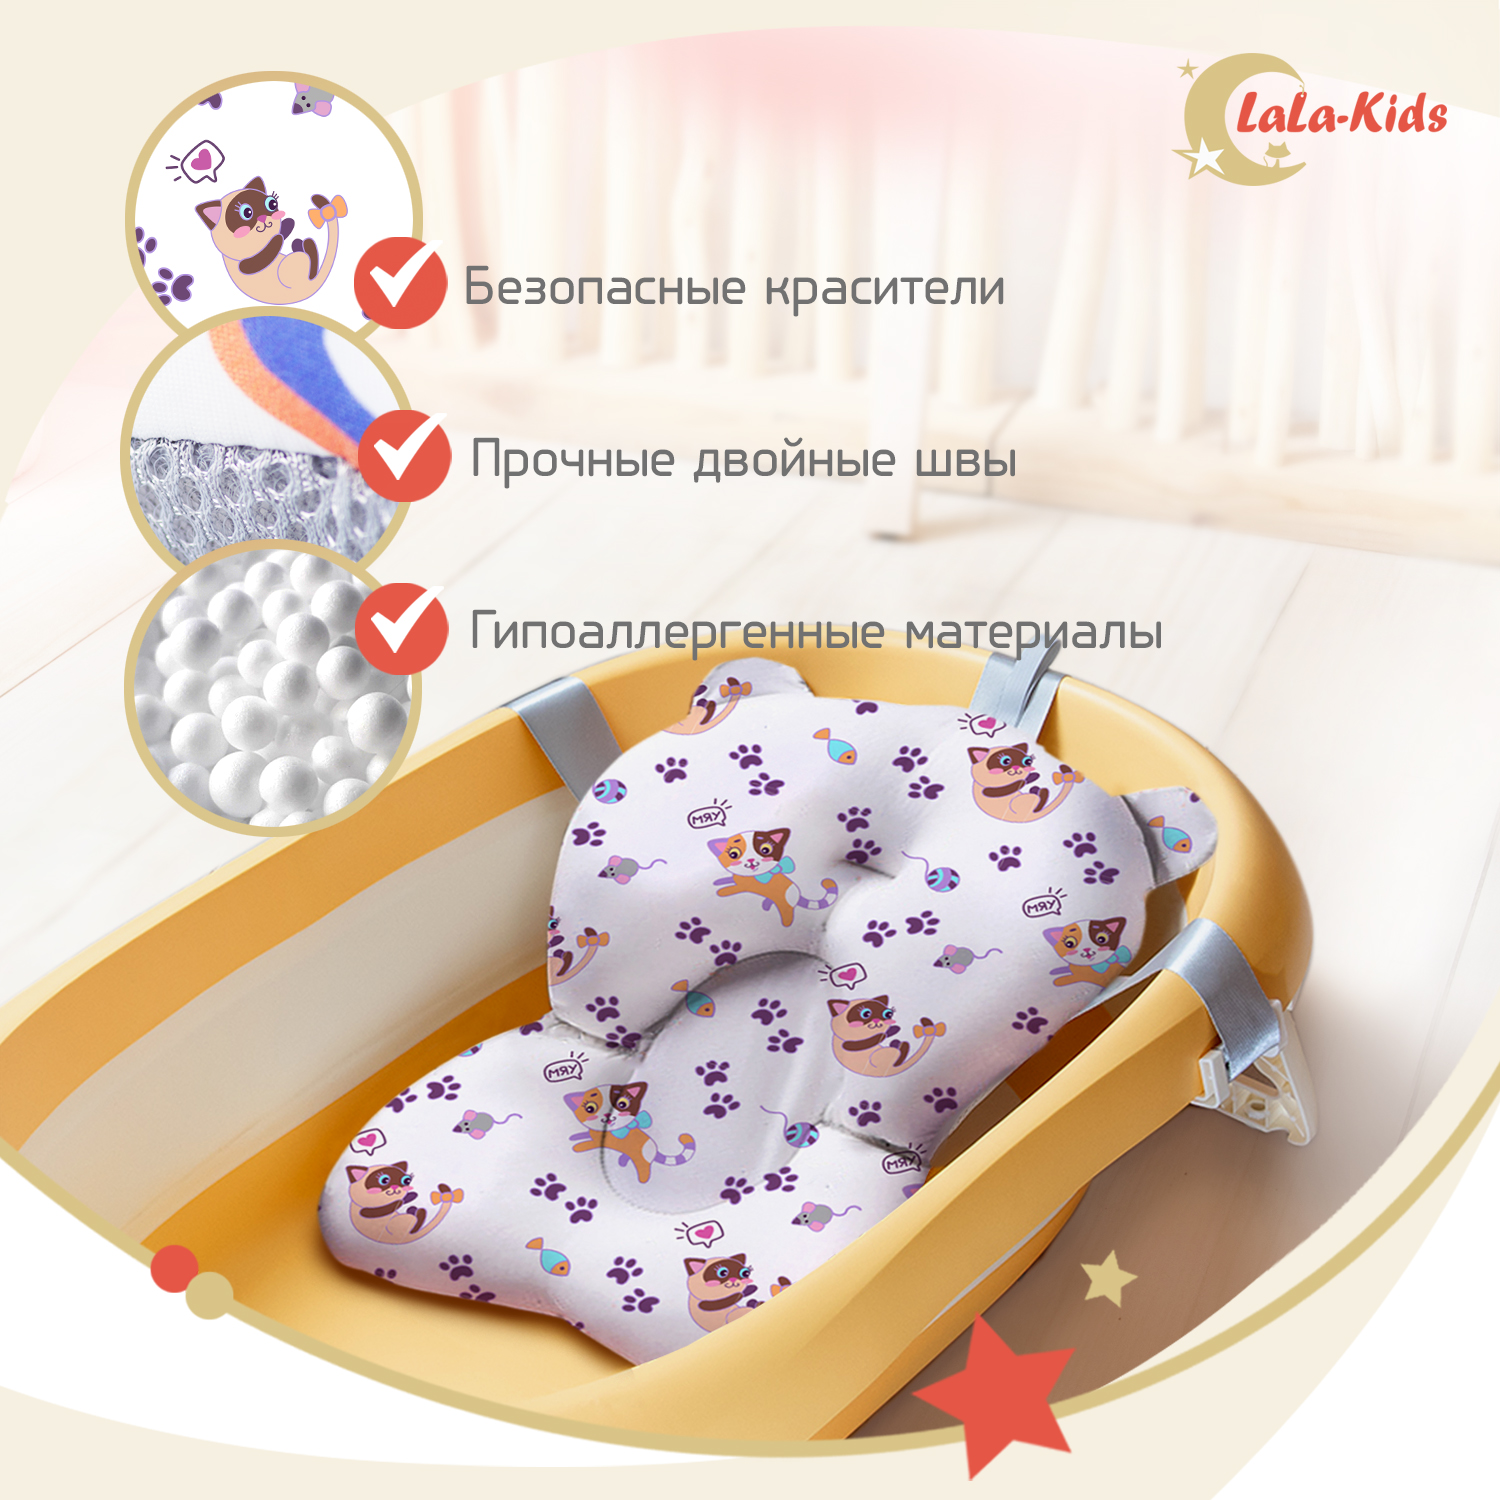 Ванночка для новорожденных LaLa-Kids складная с матрасиком ярко-лиловым в комплекте - фото 13